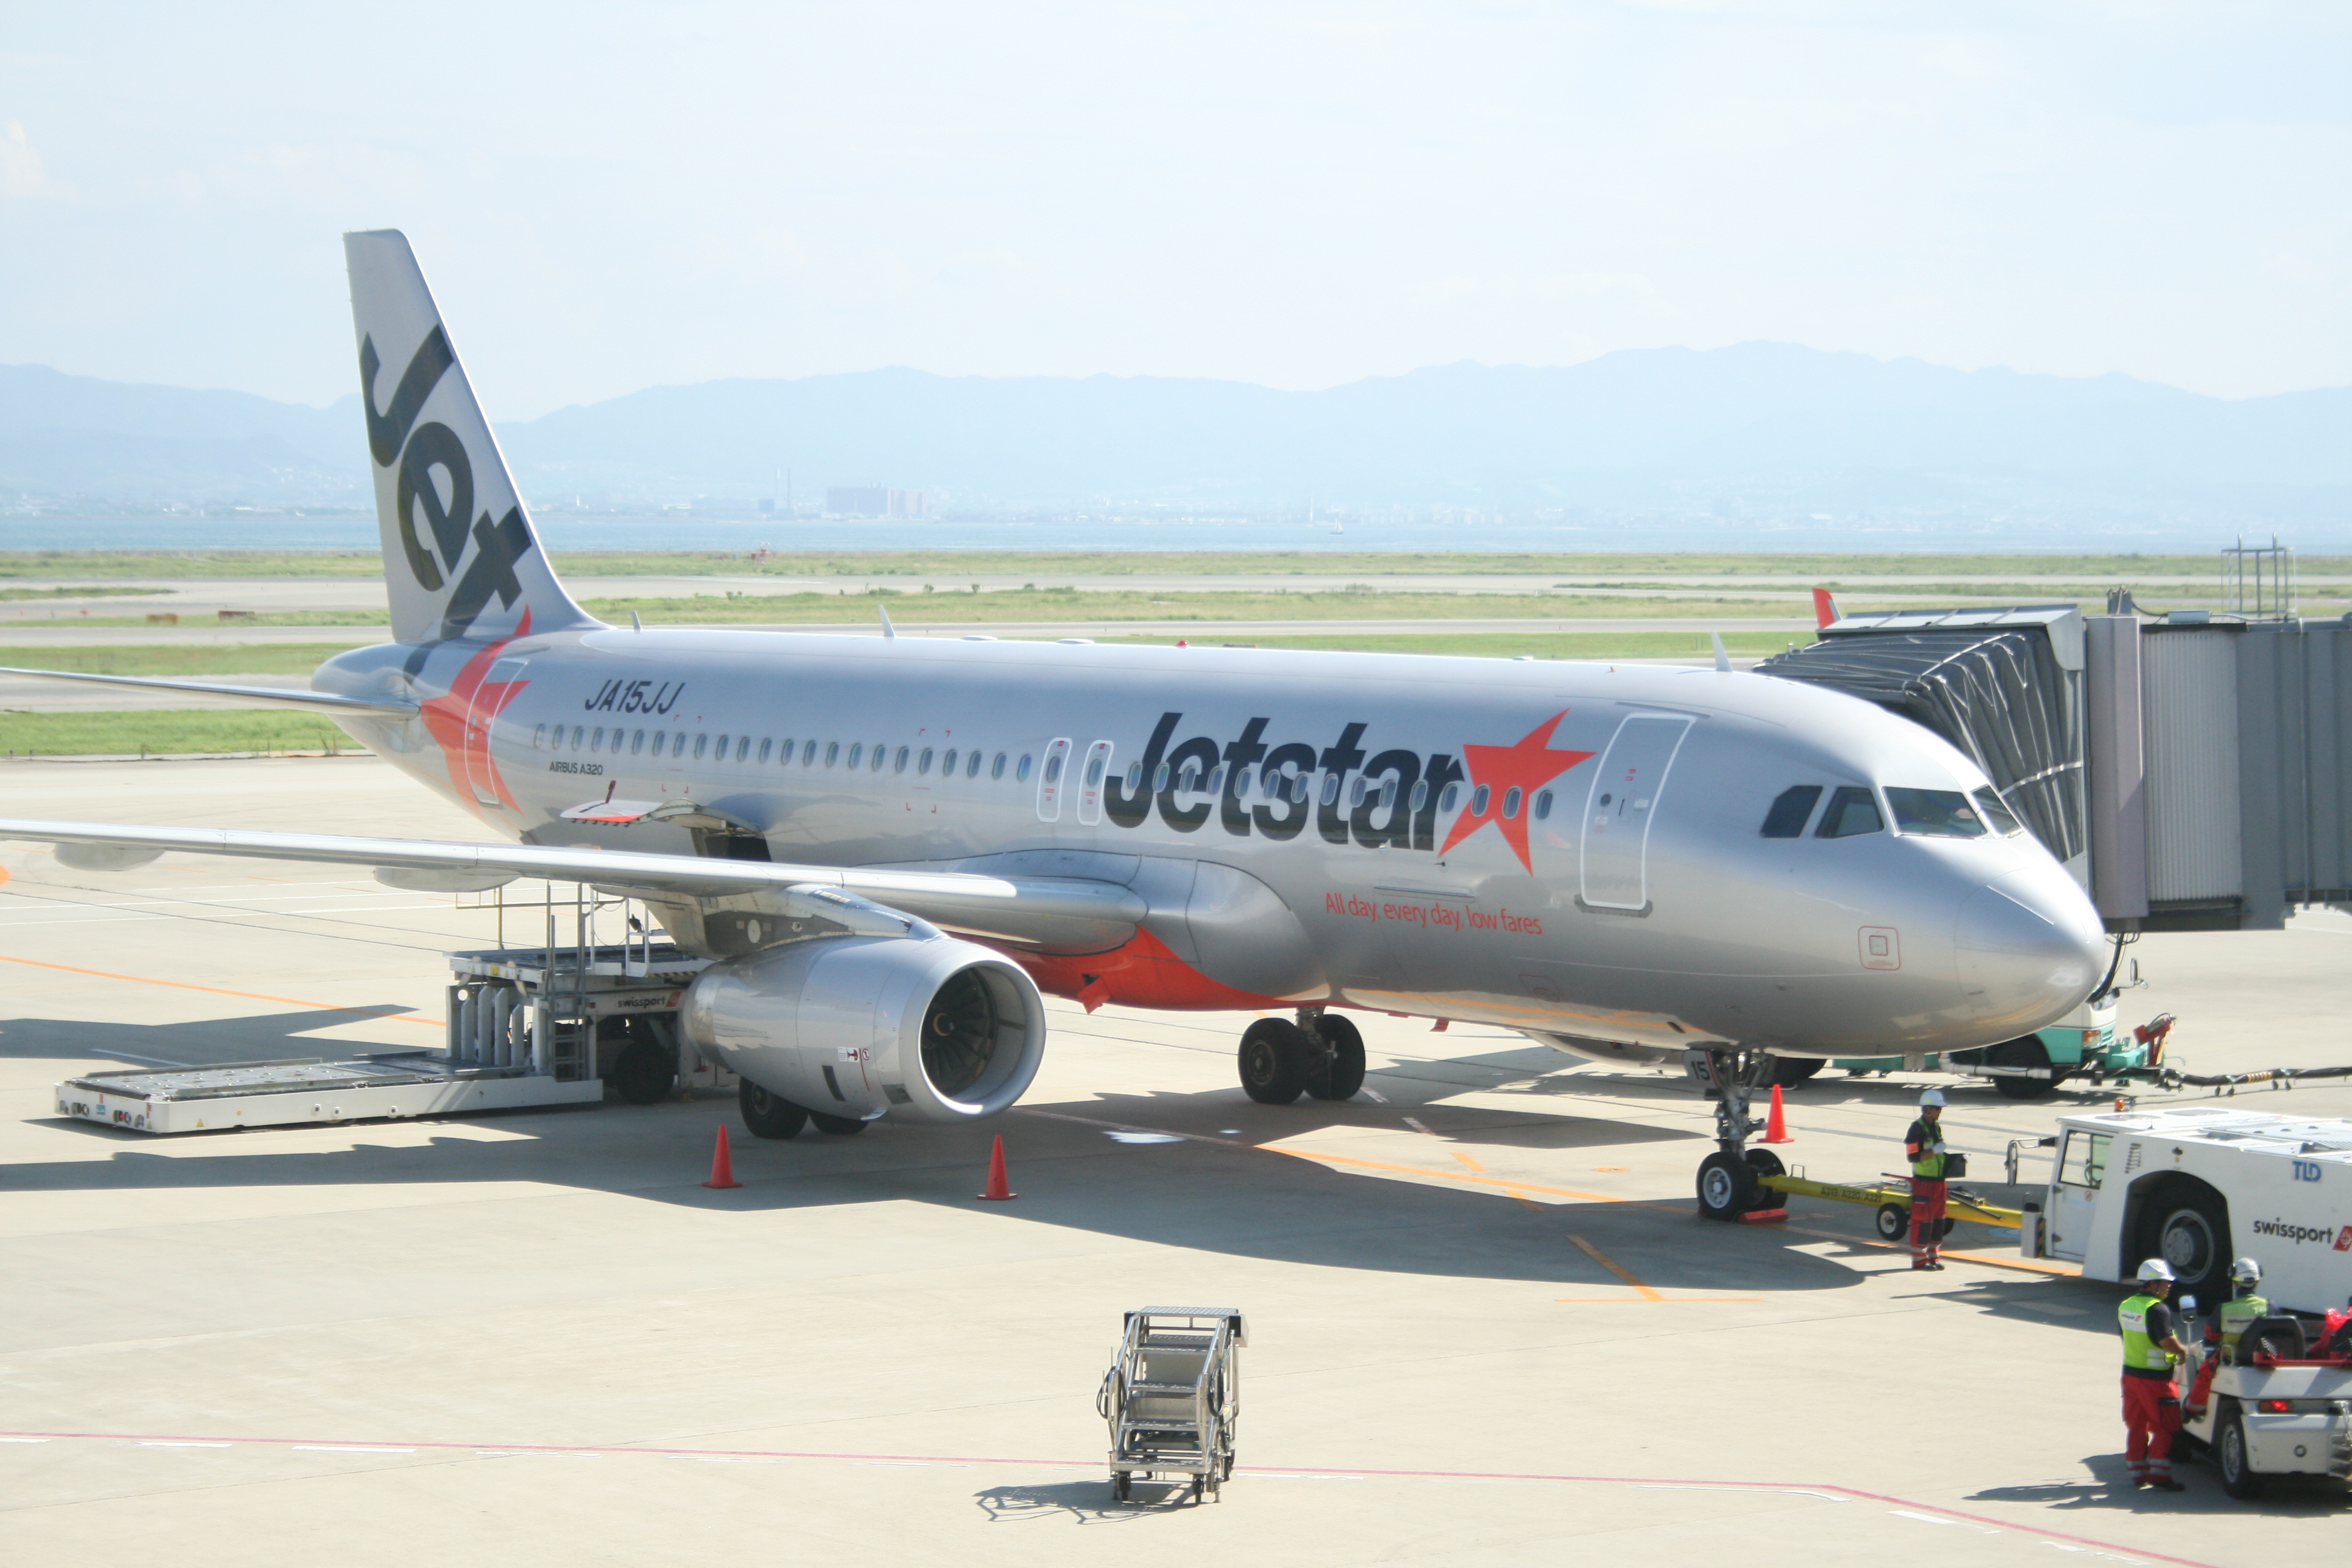 ジェットスタージャパン Jetstar Japan 搭乗レポート3 4 搭乗編 Lccで関西空港 新千歳空港